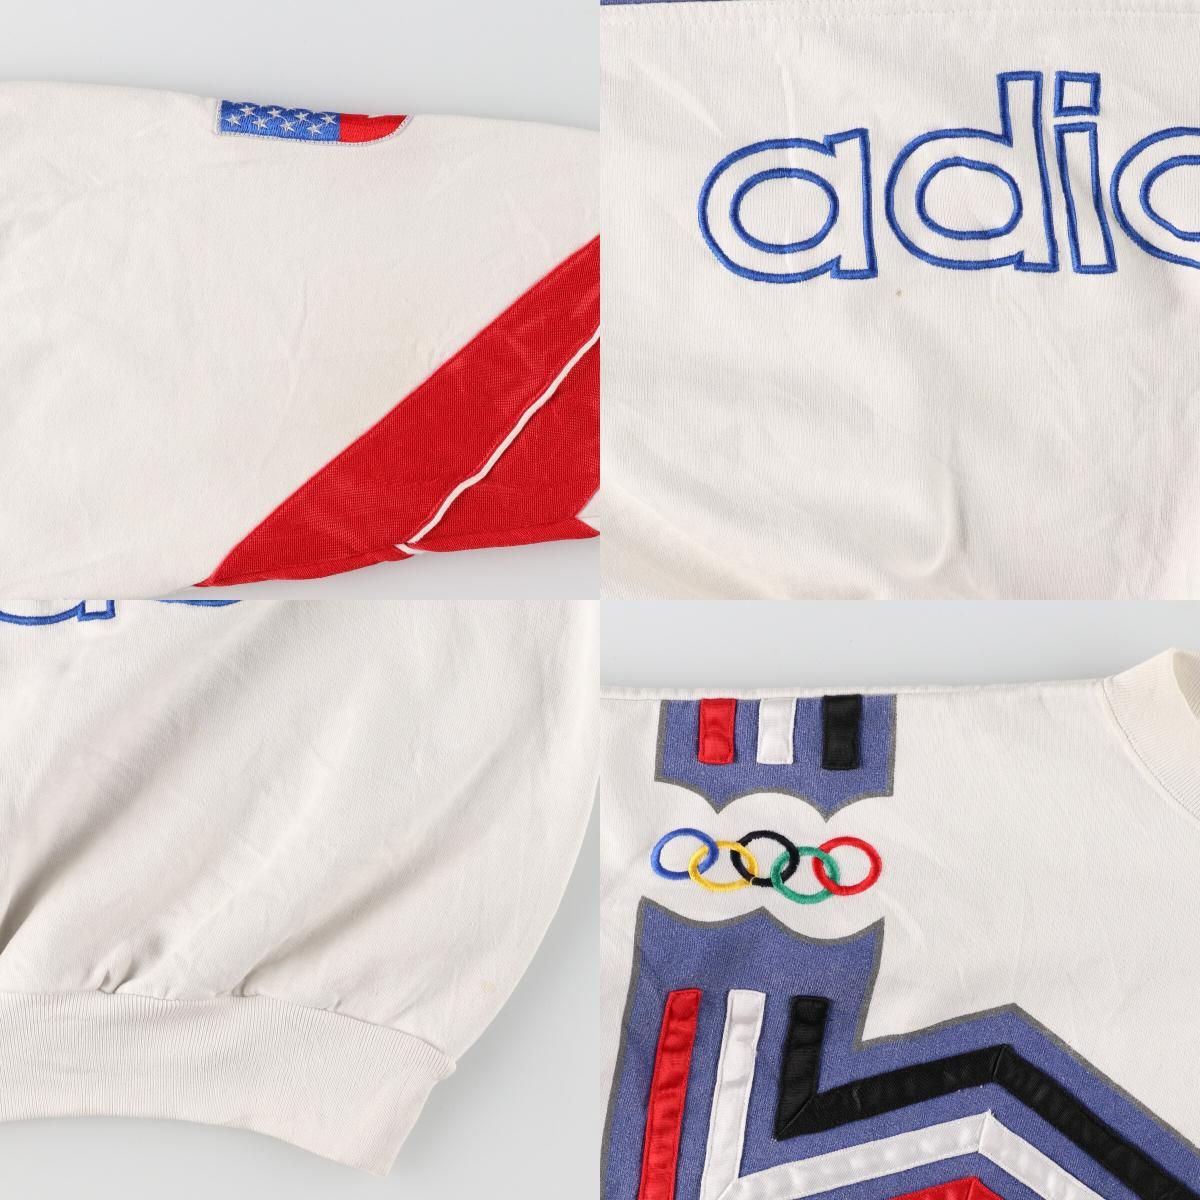 80年代 アディダス adidas LAKE PLACID レークプラシッド冬季オリンピック 1980 スウェットシャツ トレーナー メンズXL ヴィンテージ /evb002669